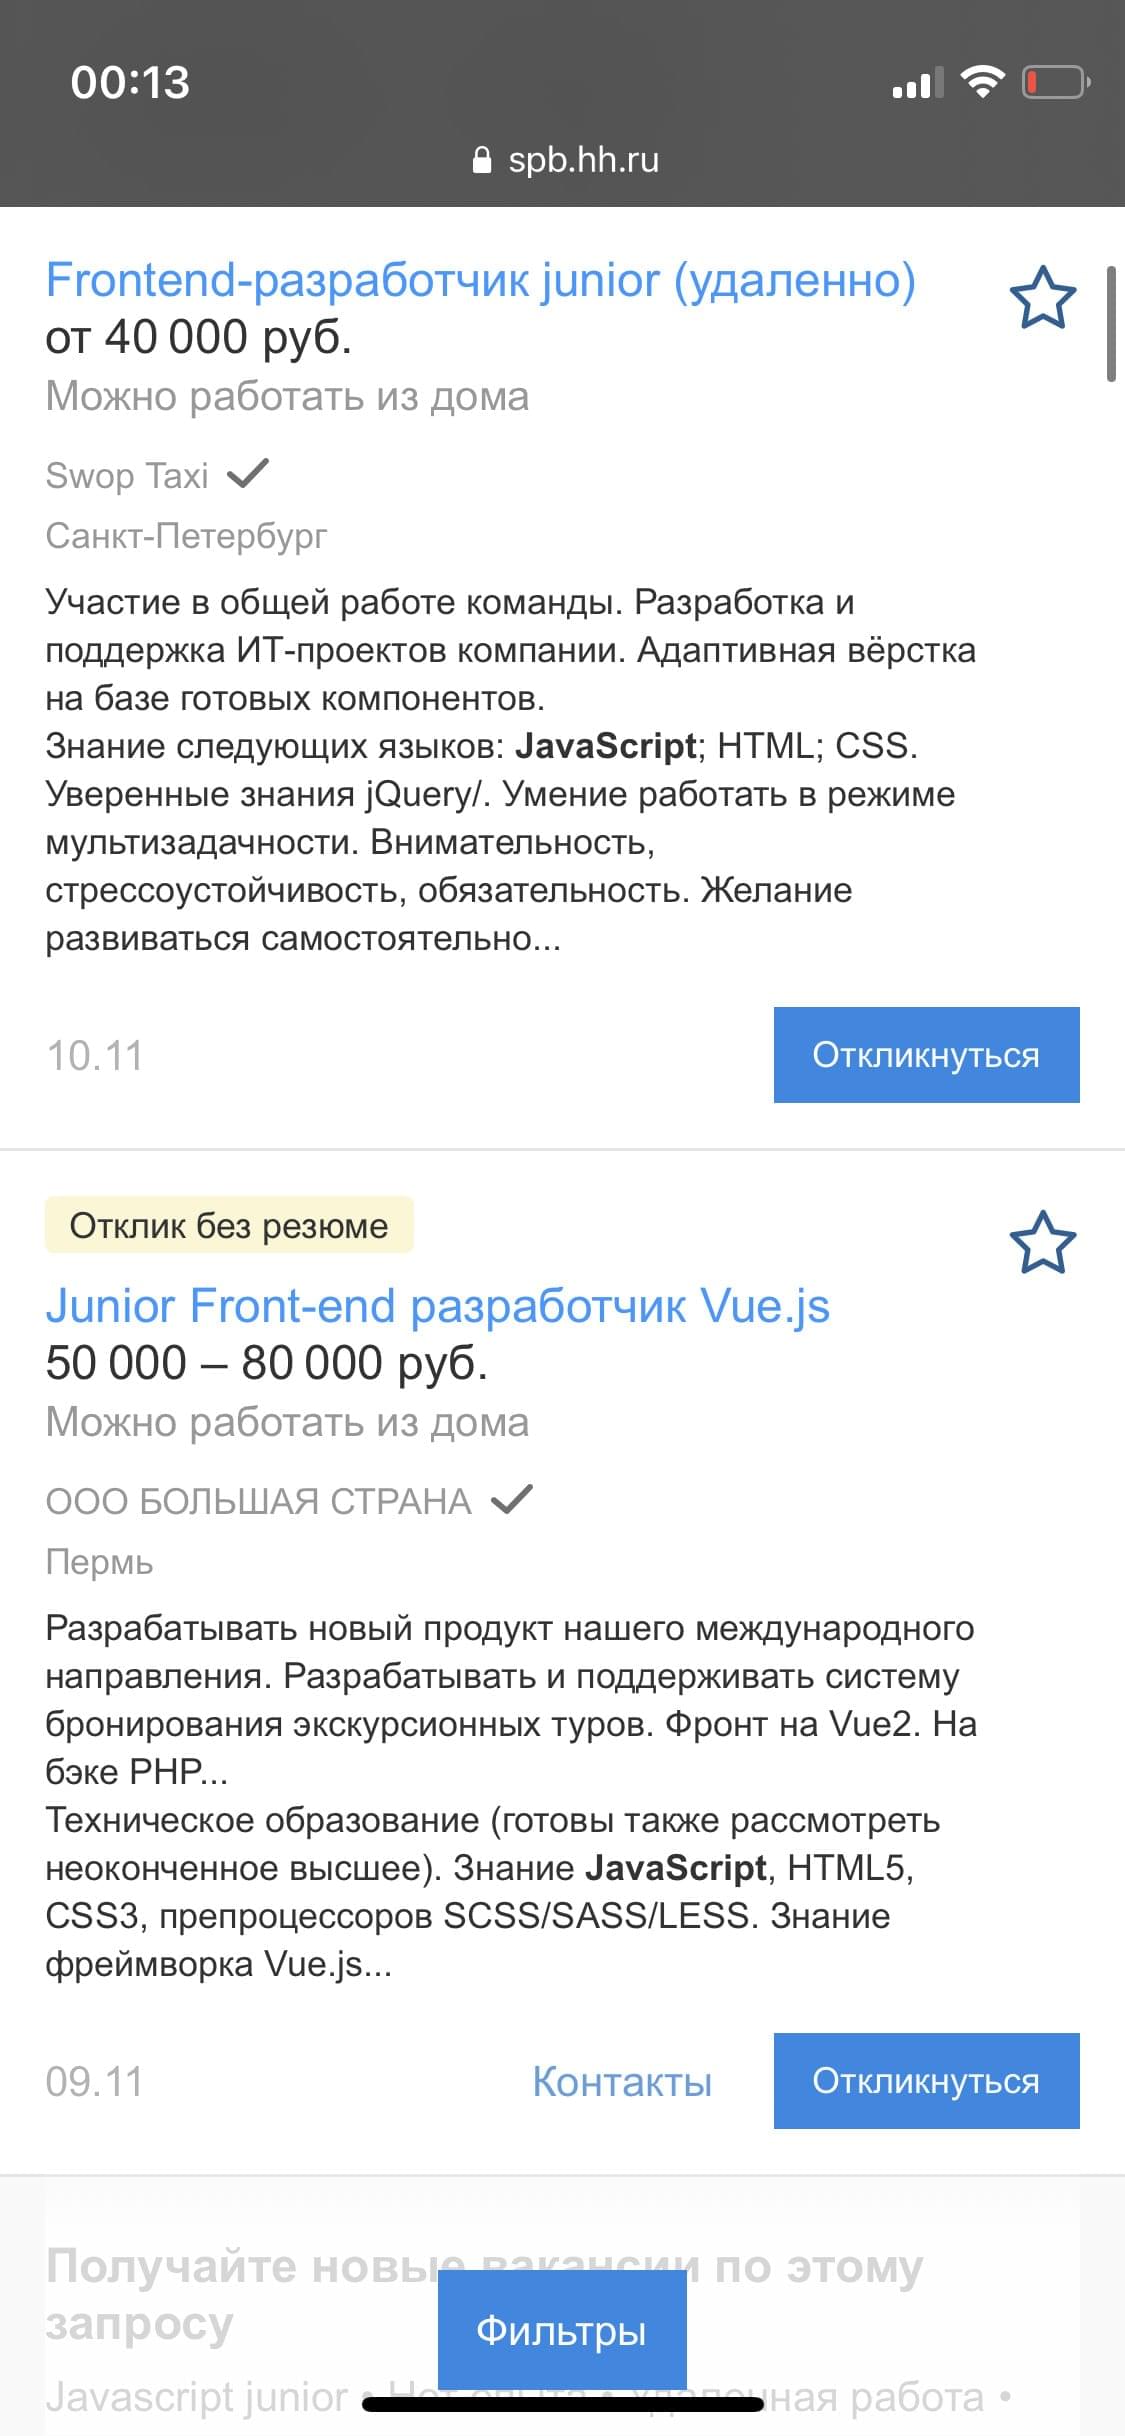 Скрин сайта fl.ru, с поиском по вакансии верстальщик